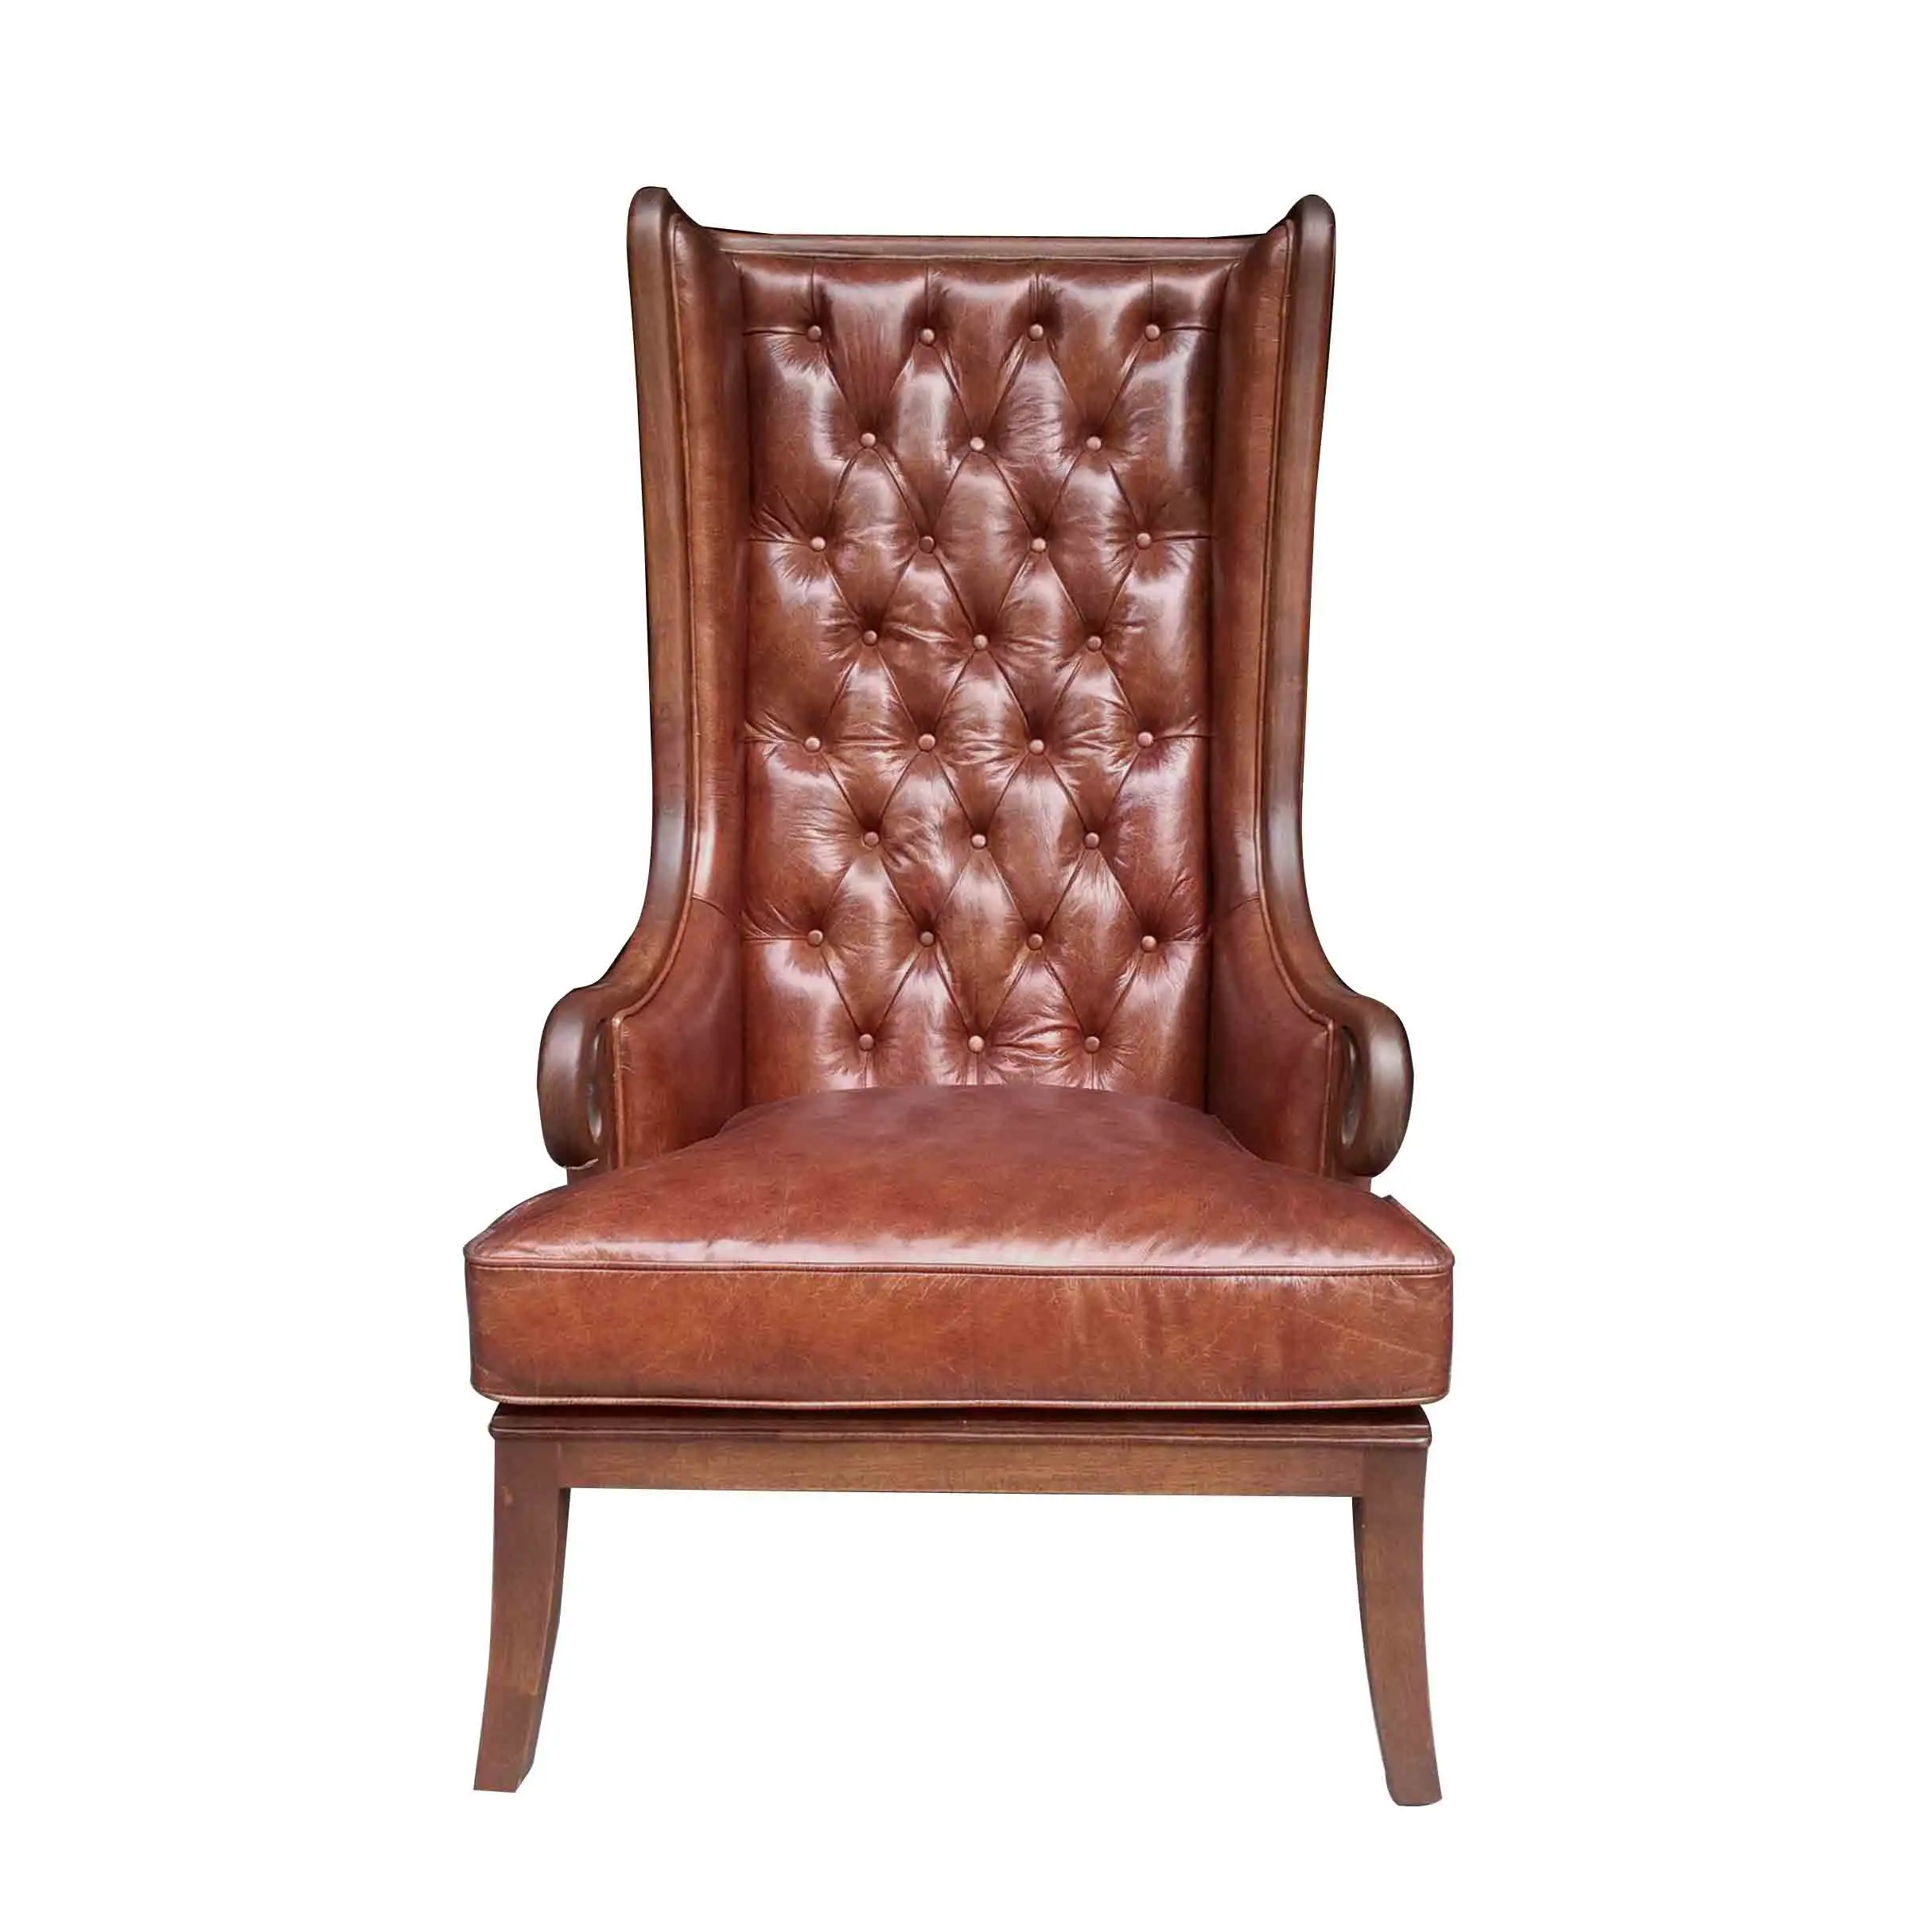 Винтажное кресло из потертой кожи с верхней отделкой, однотонное, ручная работа, деревянная рама, стеганое кресло с высокой спинкой и одним сиденьем